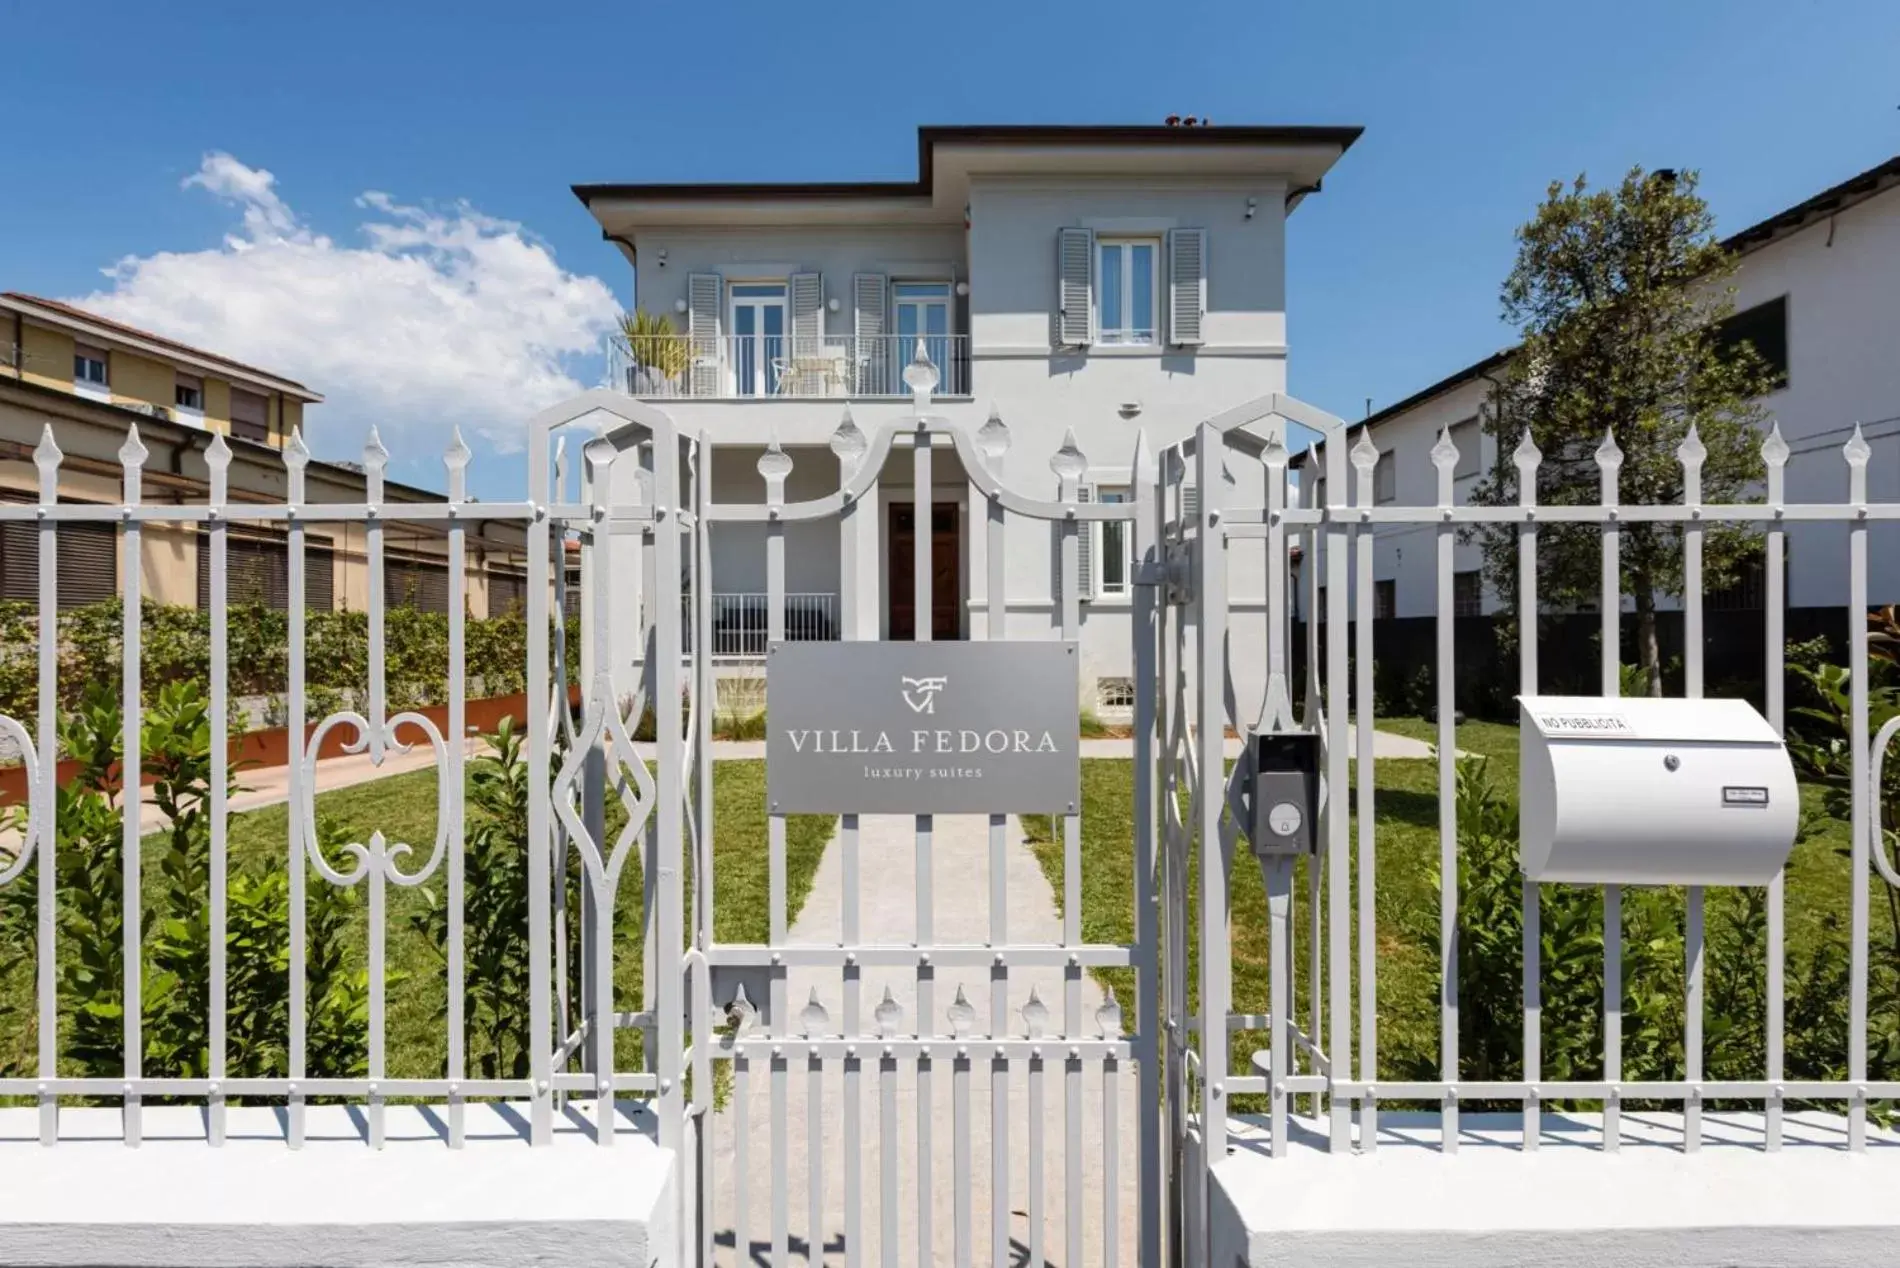 Facade/entrance, Property Building in Villa Fedora Luxury